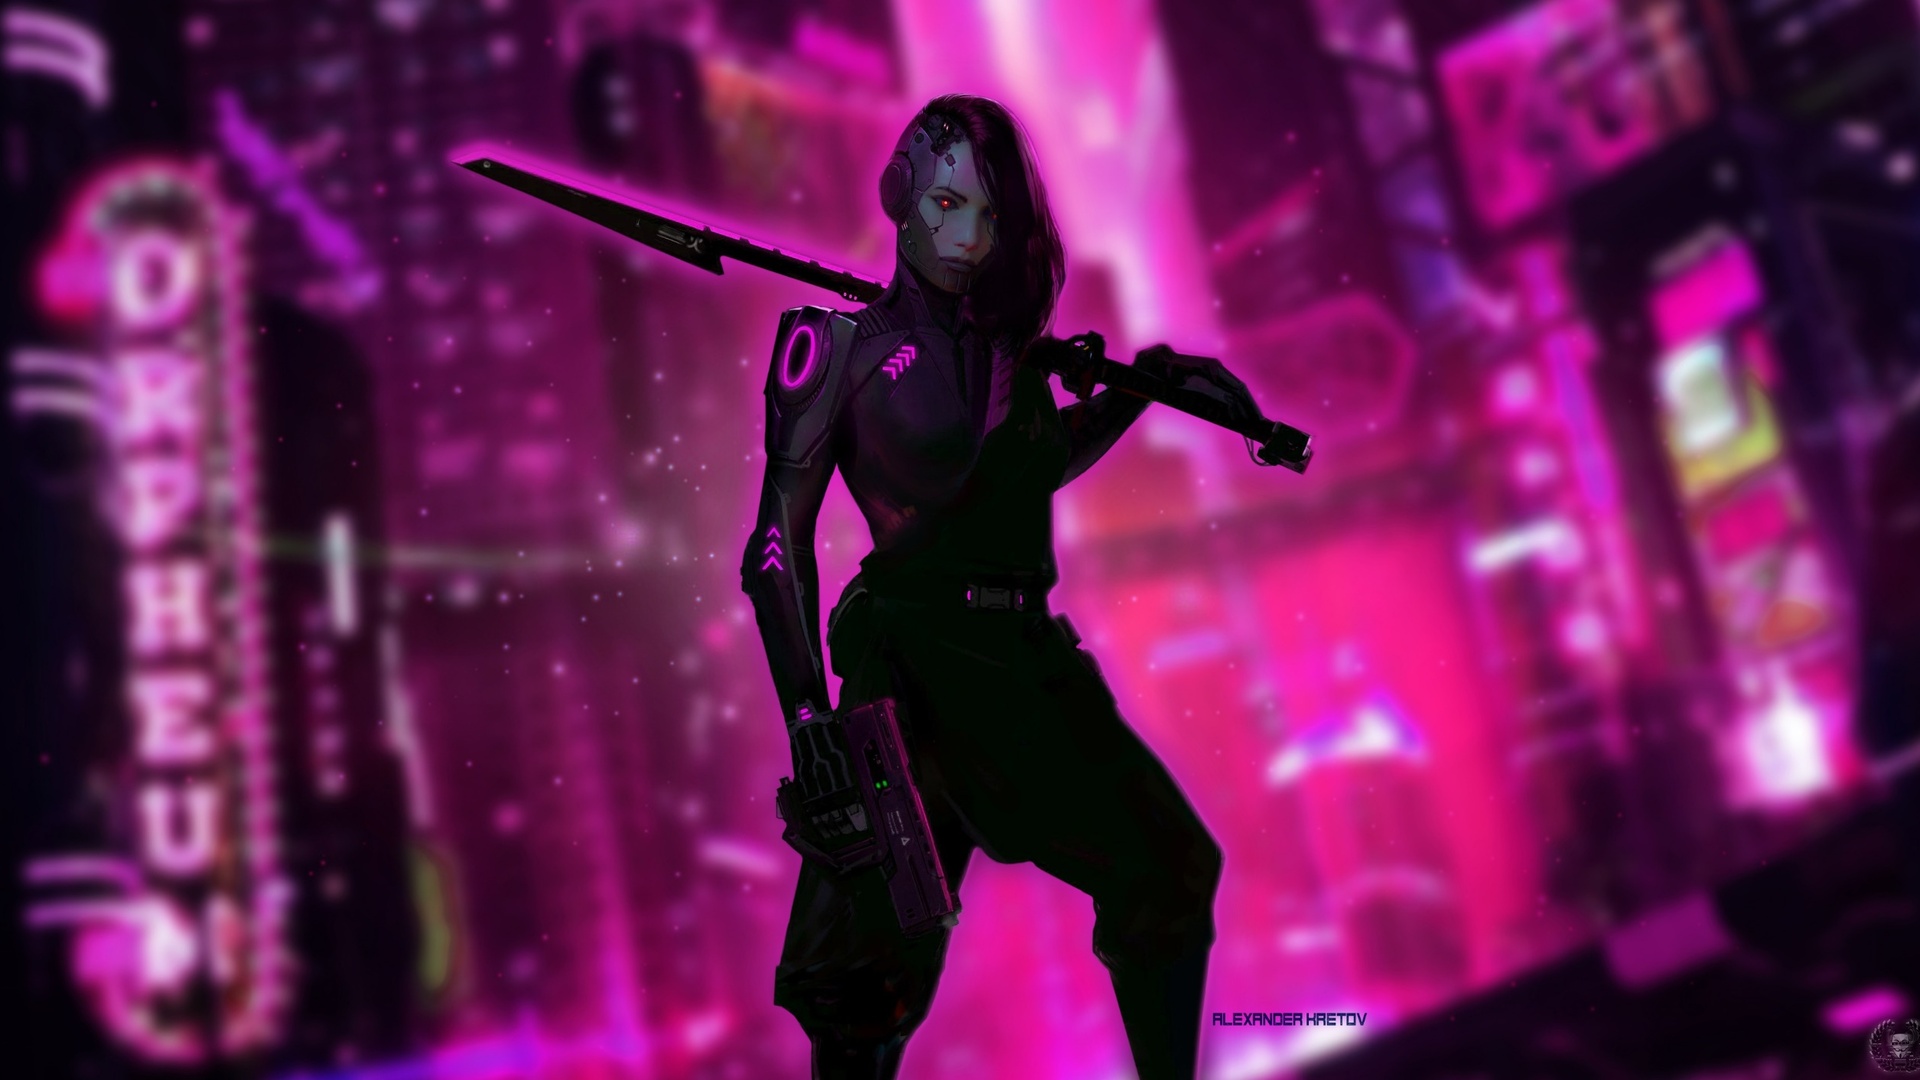 Cyberpunk woman wallpaper фото 21